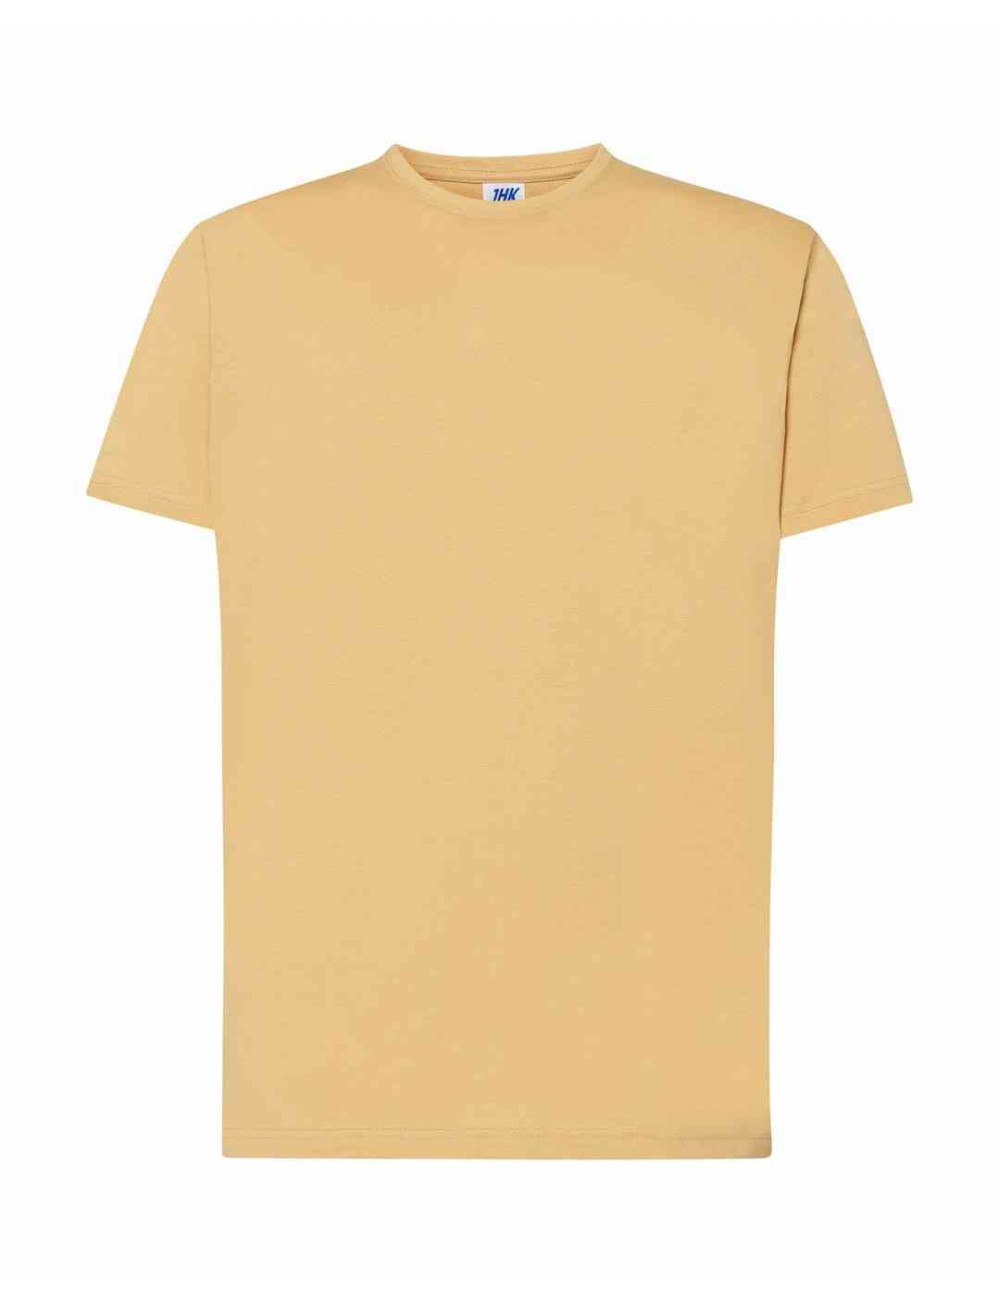 Koszulka męska tsra 150 regular t-shirt sa - sand Jhk